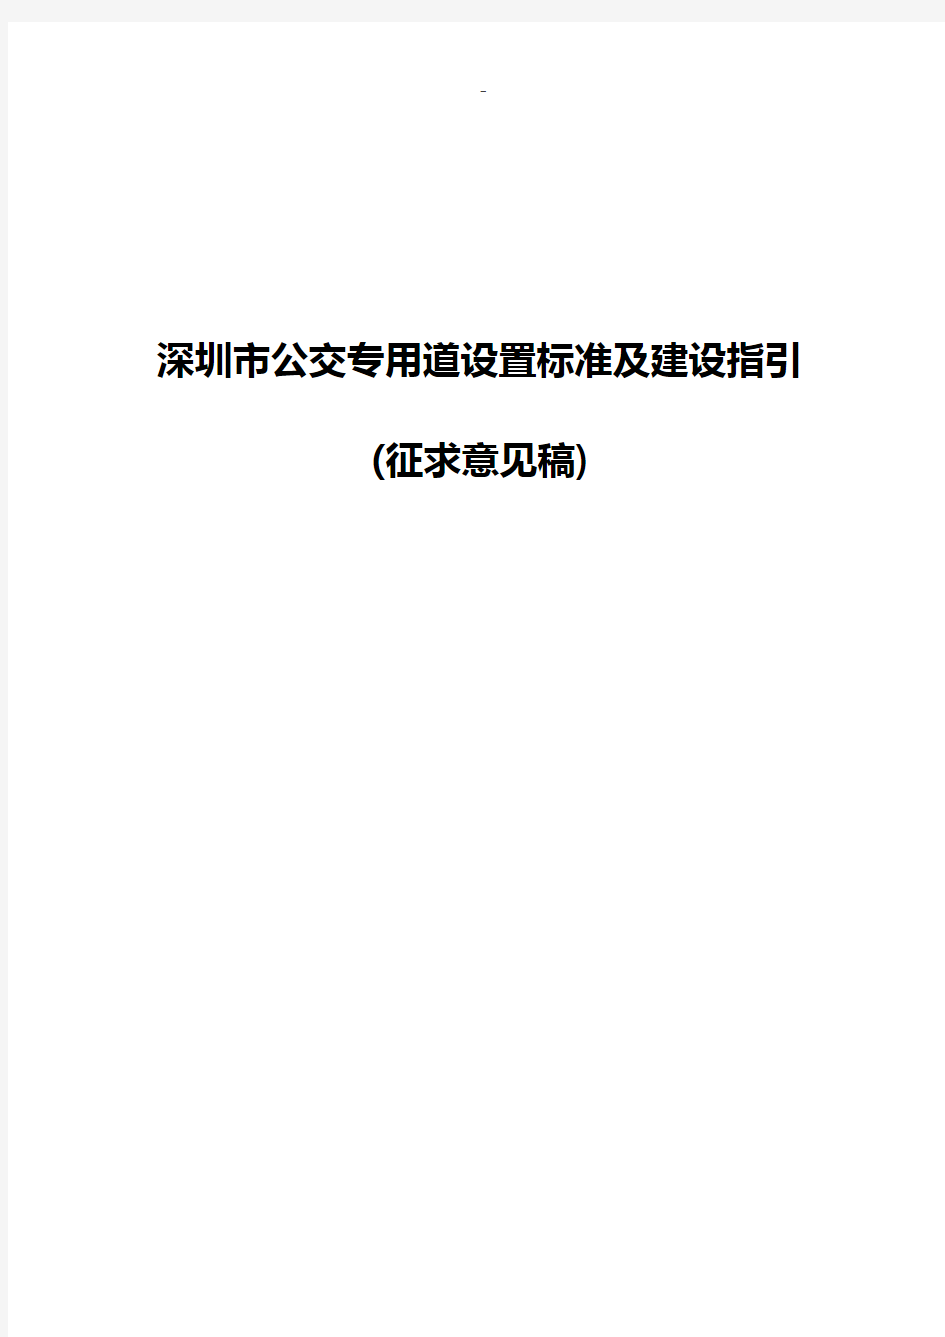 深圳市公交专用道设置标准规定及建设指引(征求意见稿)